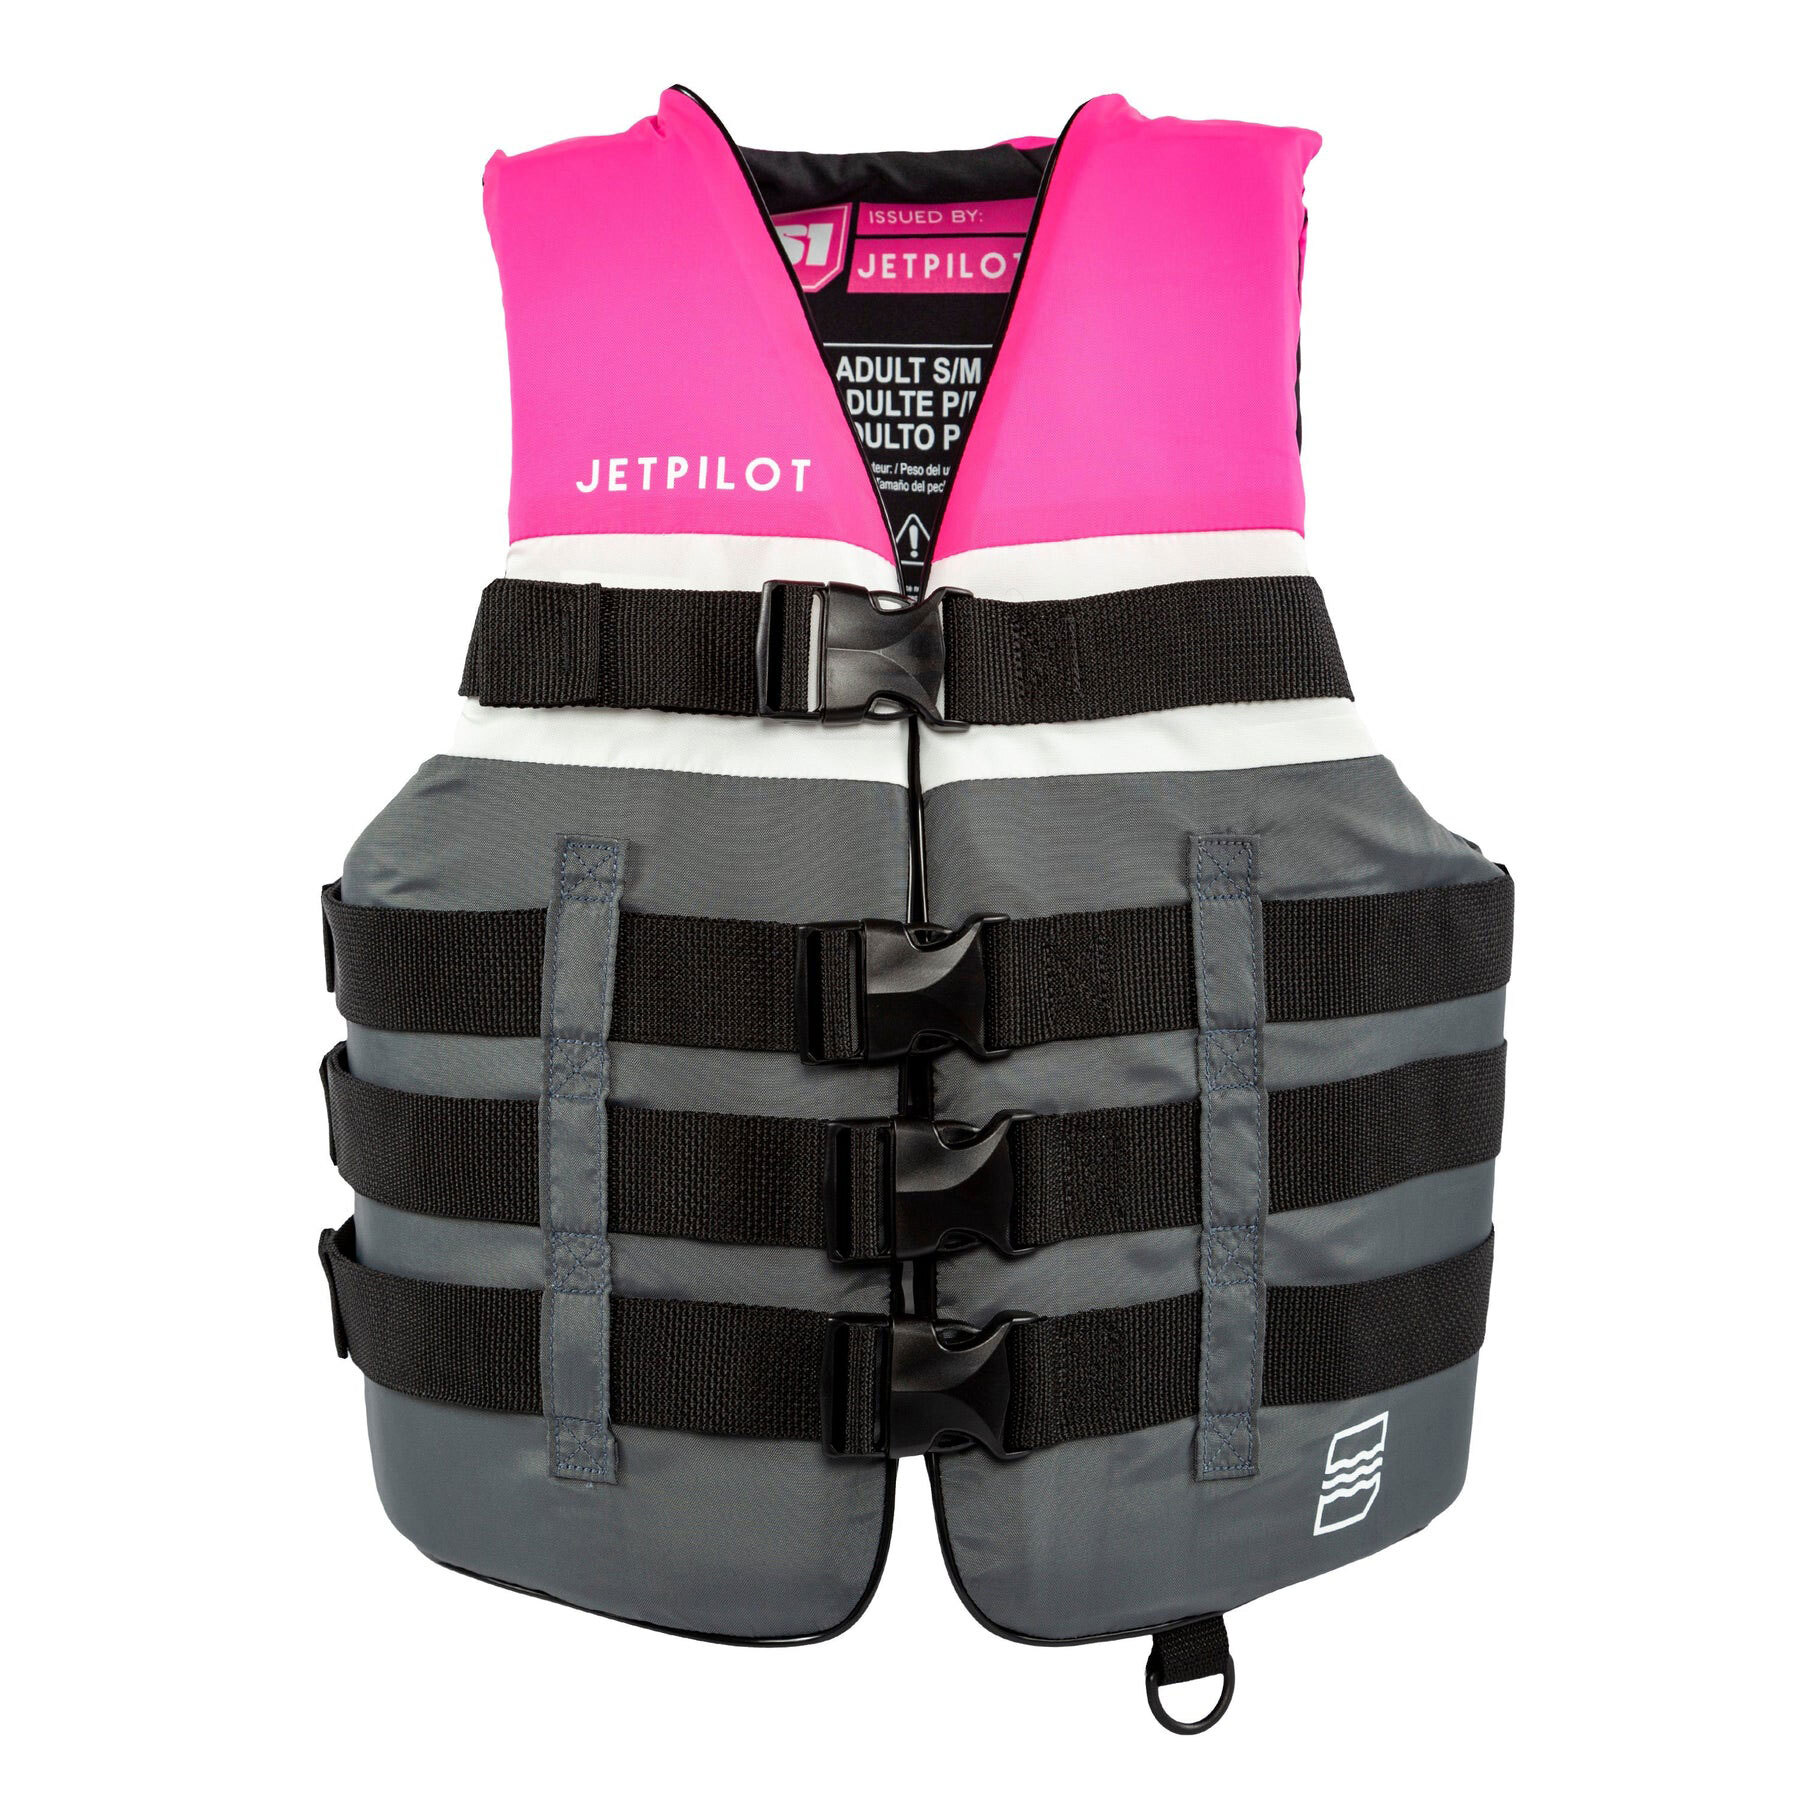 Women's JetPilot Nylon Life Jacket Large to Extra Large pink